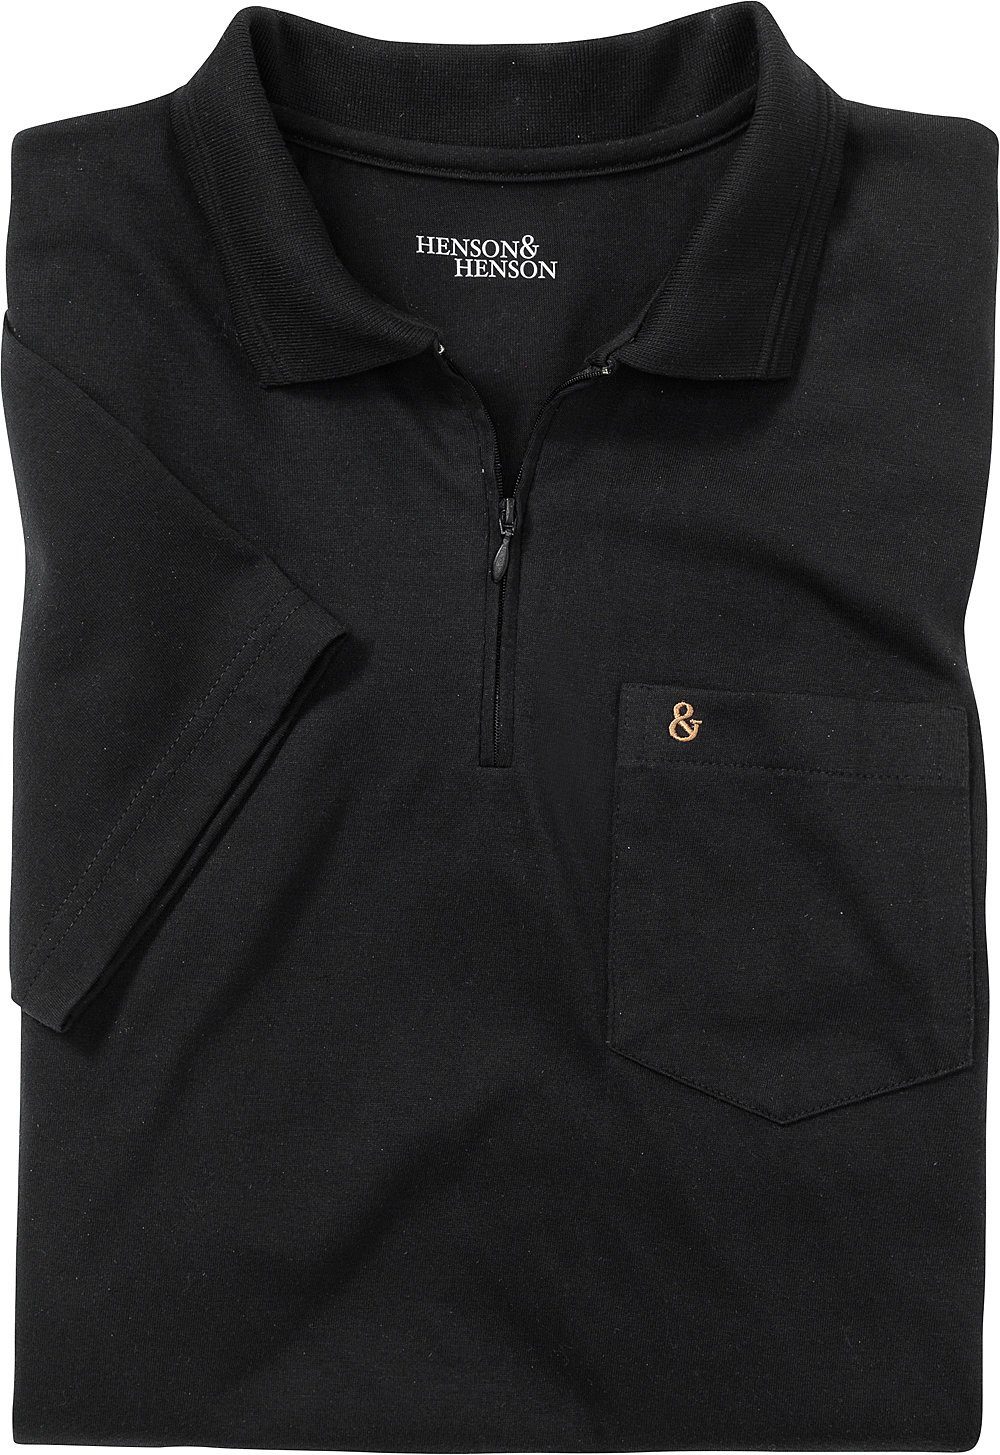 Poloshirt schwarz Superweiches HENSON&HENSON Jersey-Gewebe